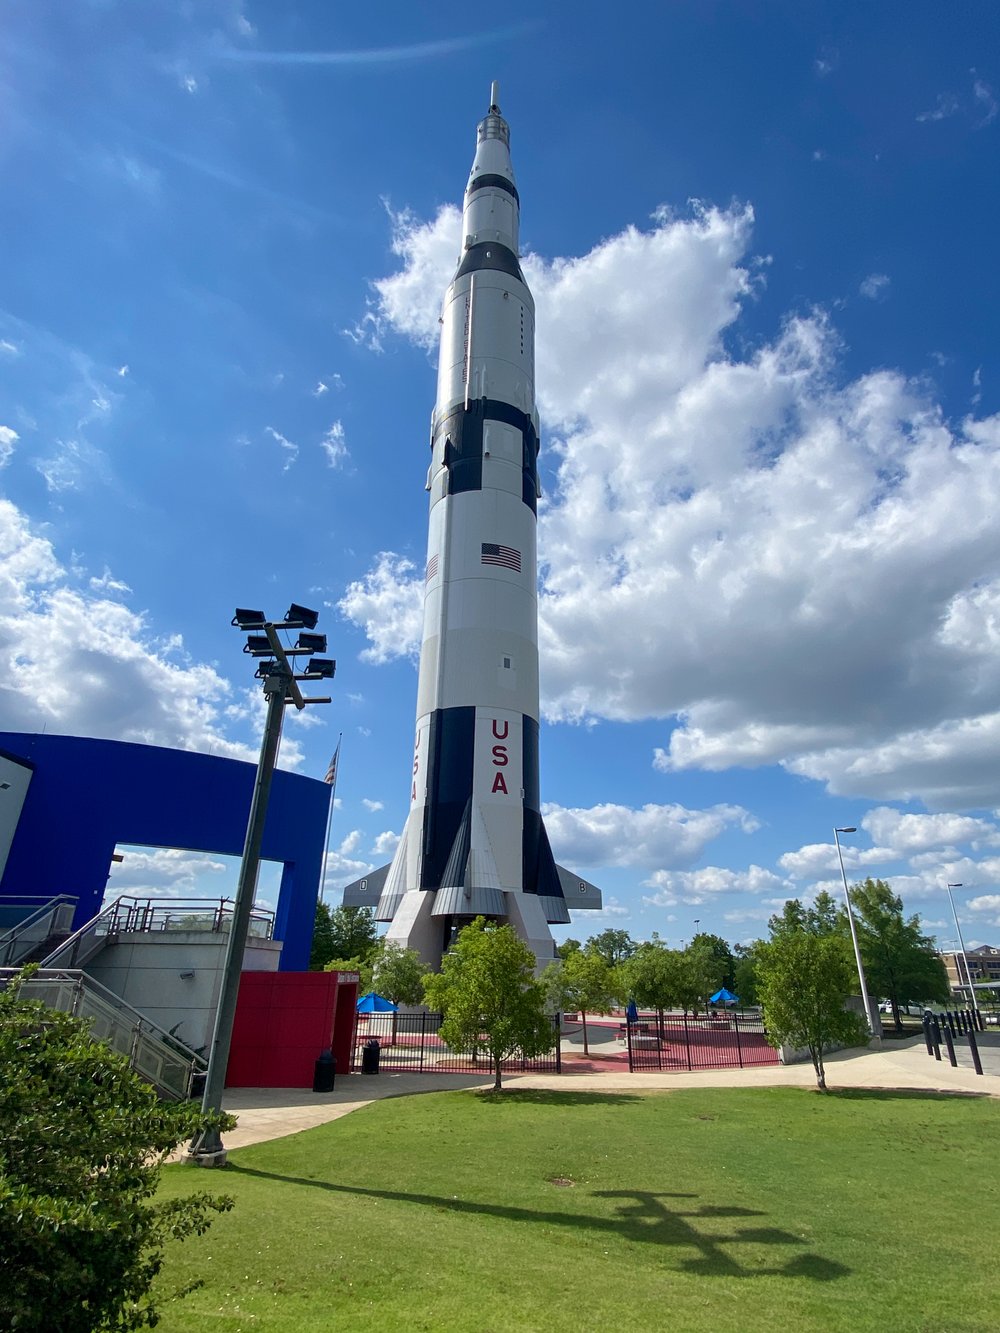 Saturn V Rocket at U.S. Space &amp; Rocket Center in Huntsville, AL